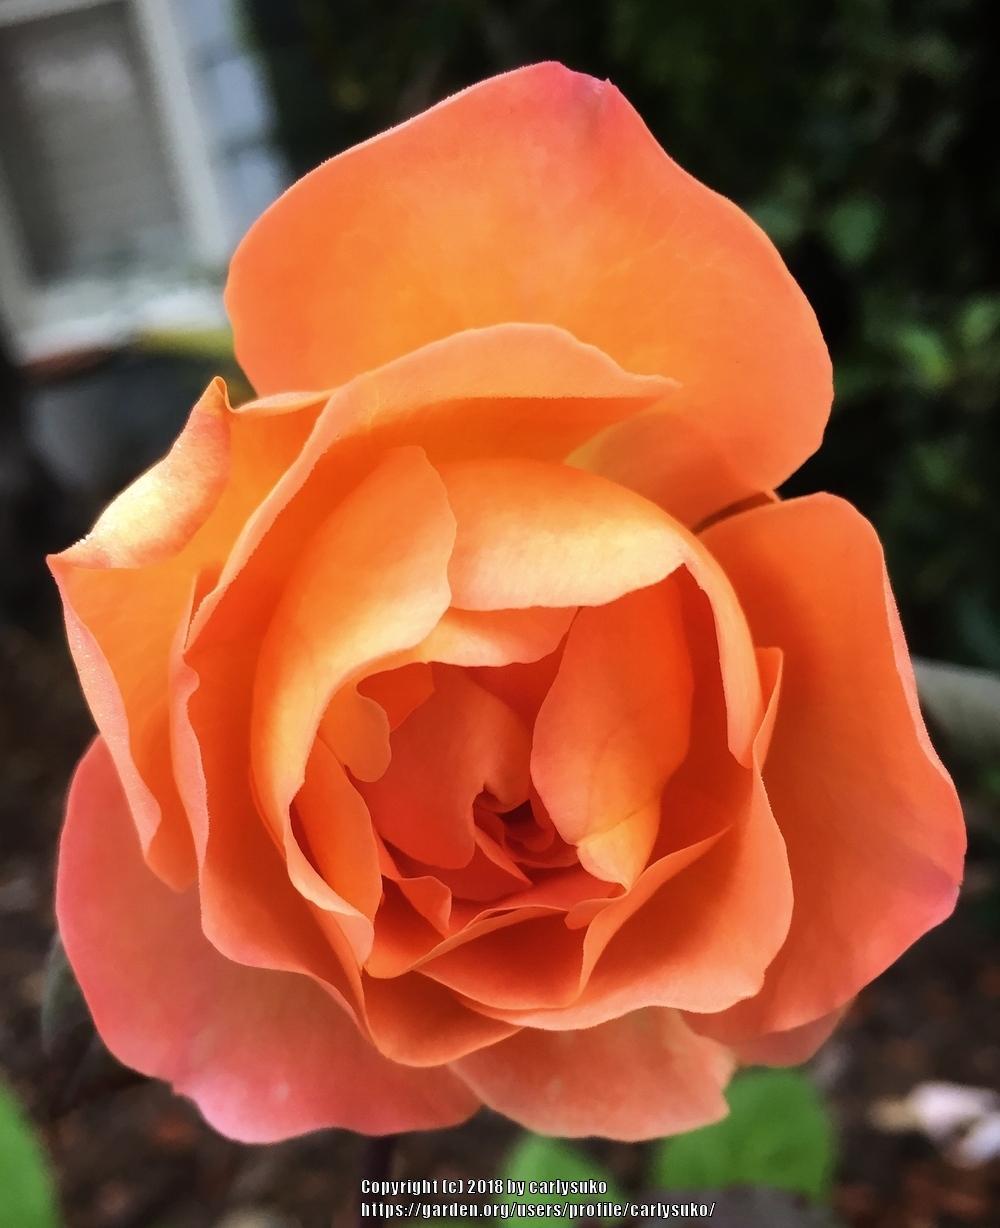 Photo of Rose (Rosa 'Lady Emma Hamilton') uploaded by carlysuko